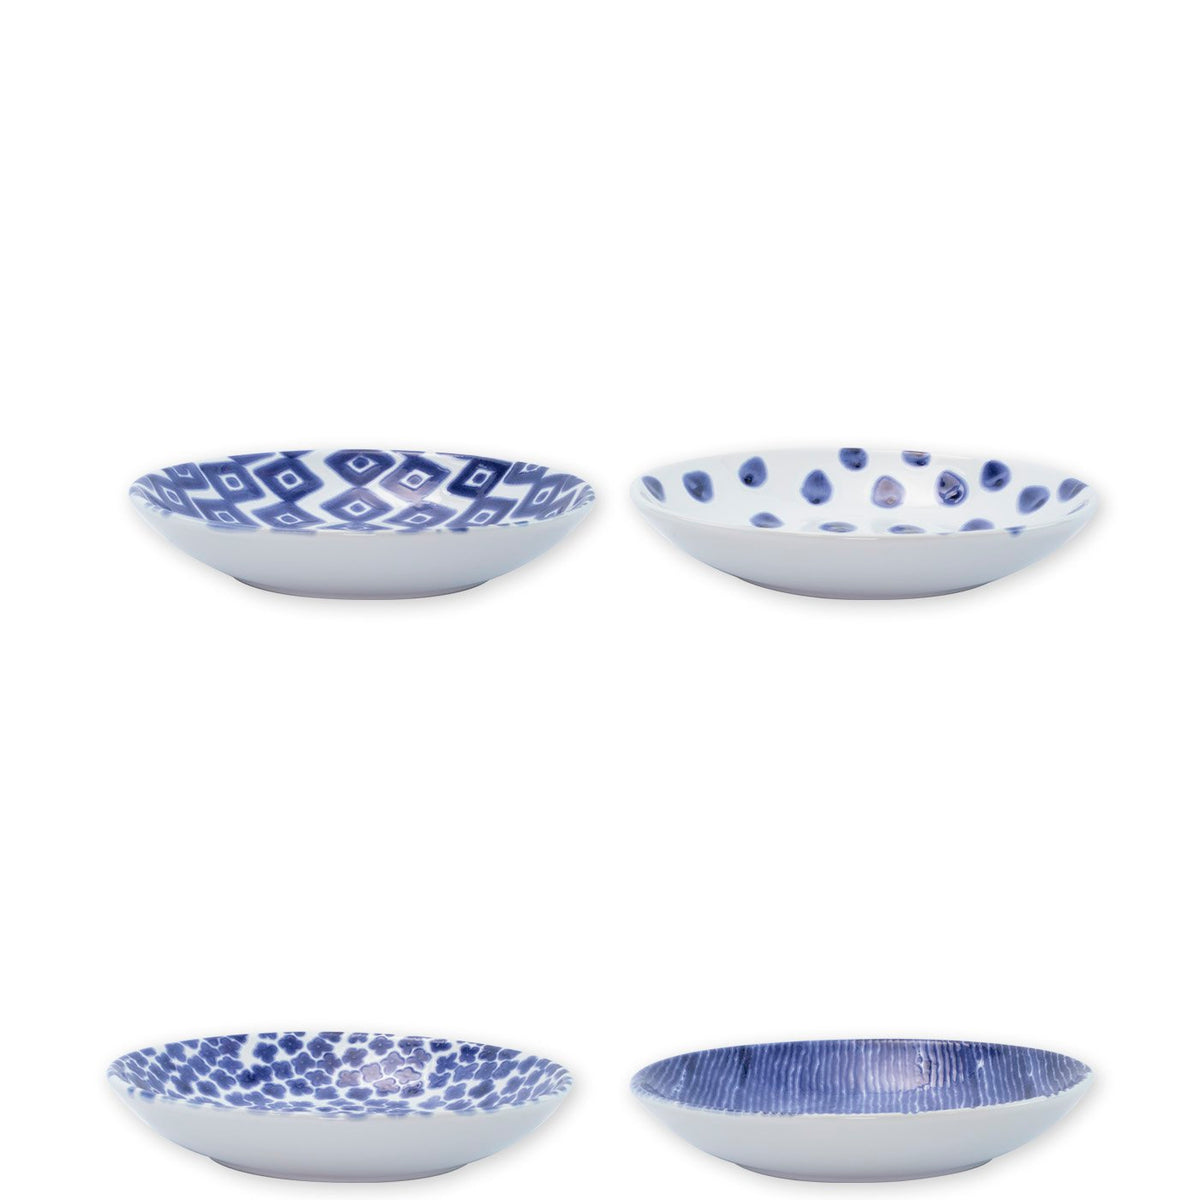 VIETRI: Santorini Assorted Pasta Bowls - Set of 4 - Artistica.com